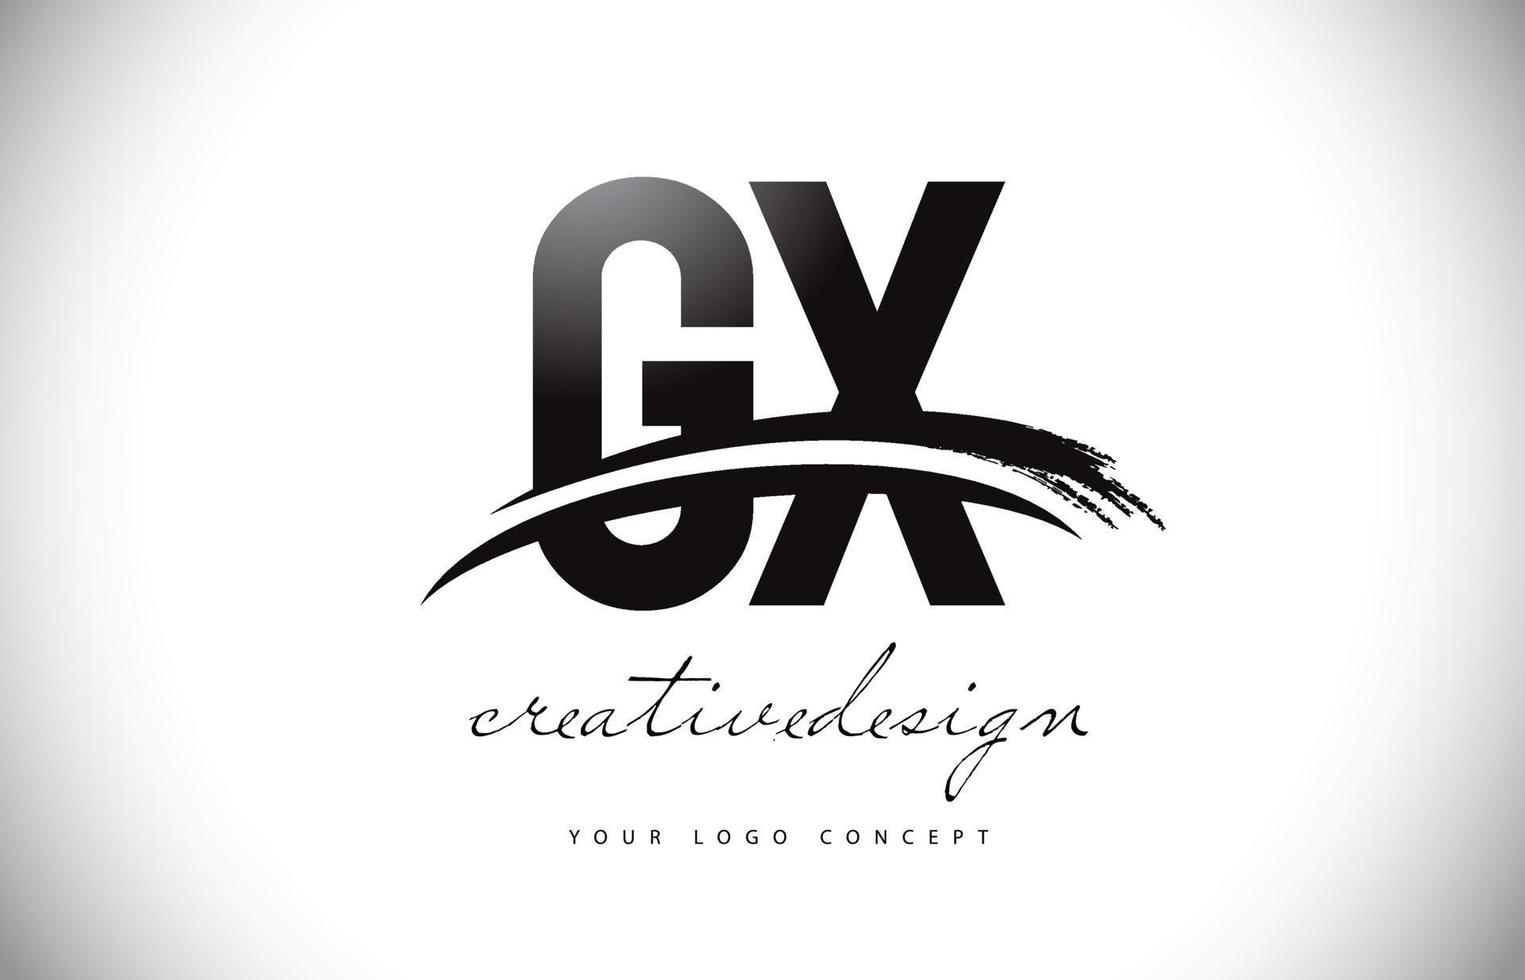 Diseño del logotipo de la letra gx gx con swoosh y trazo de pincel negro. vector